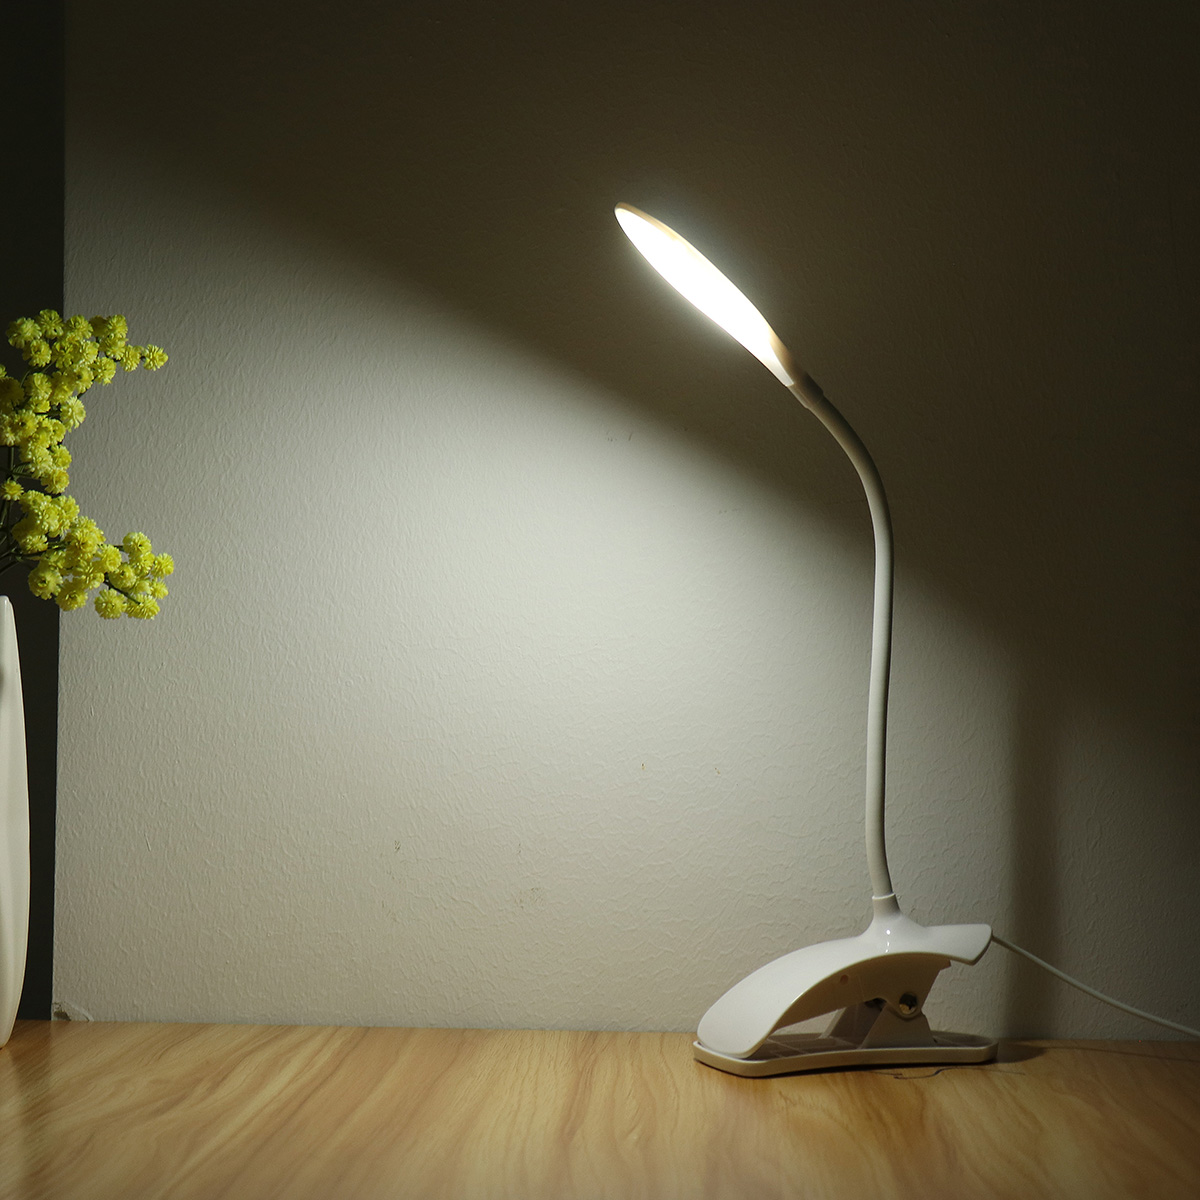 

Гибкий LED Стол Лампа USB Настольный Держатель Клип На Прикроватный Кабинет Чтение Книги Свет